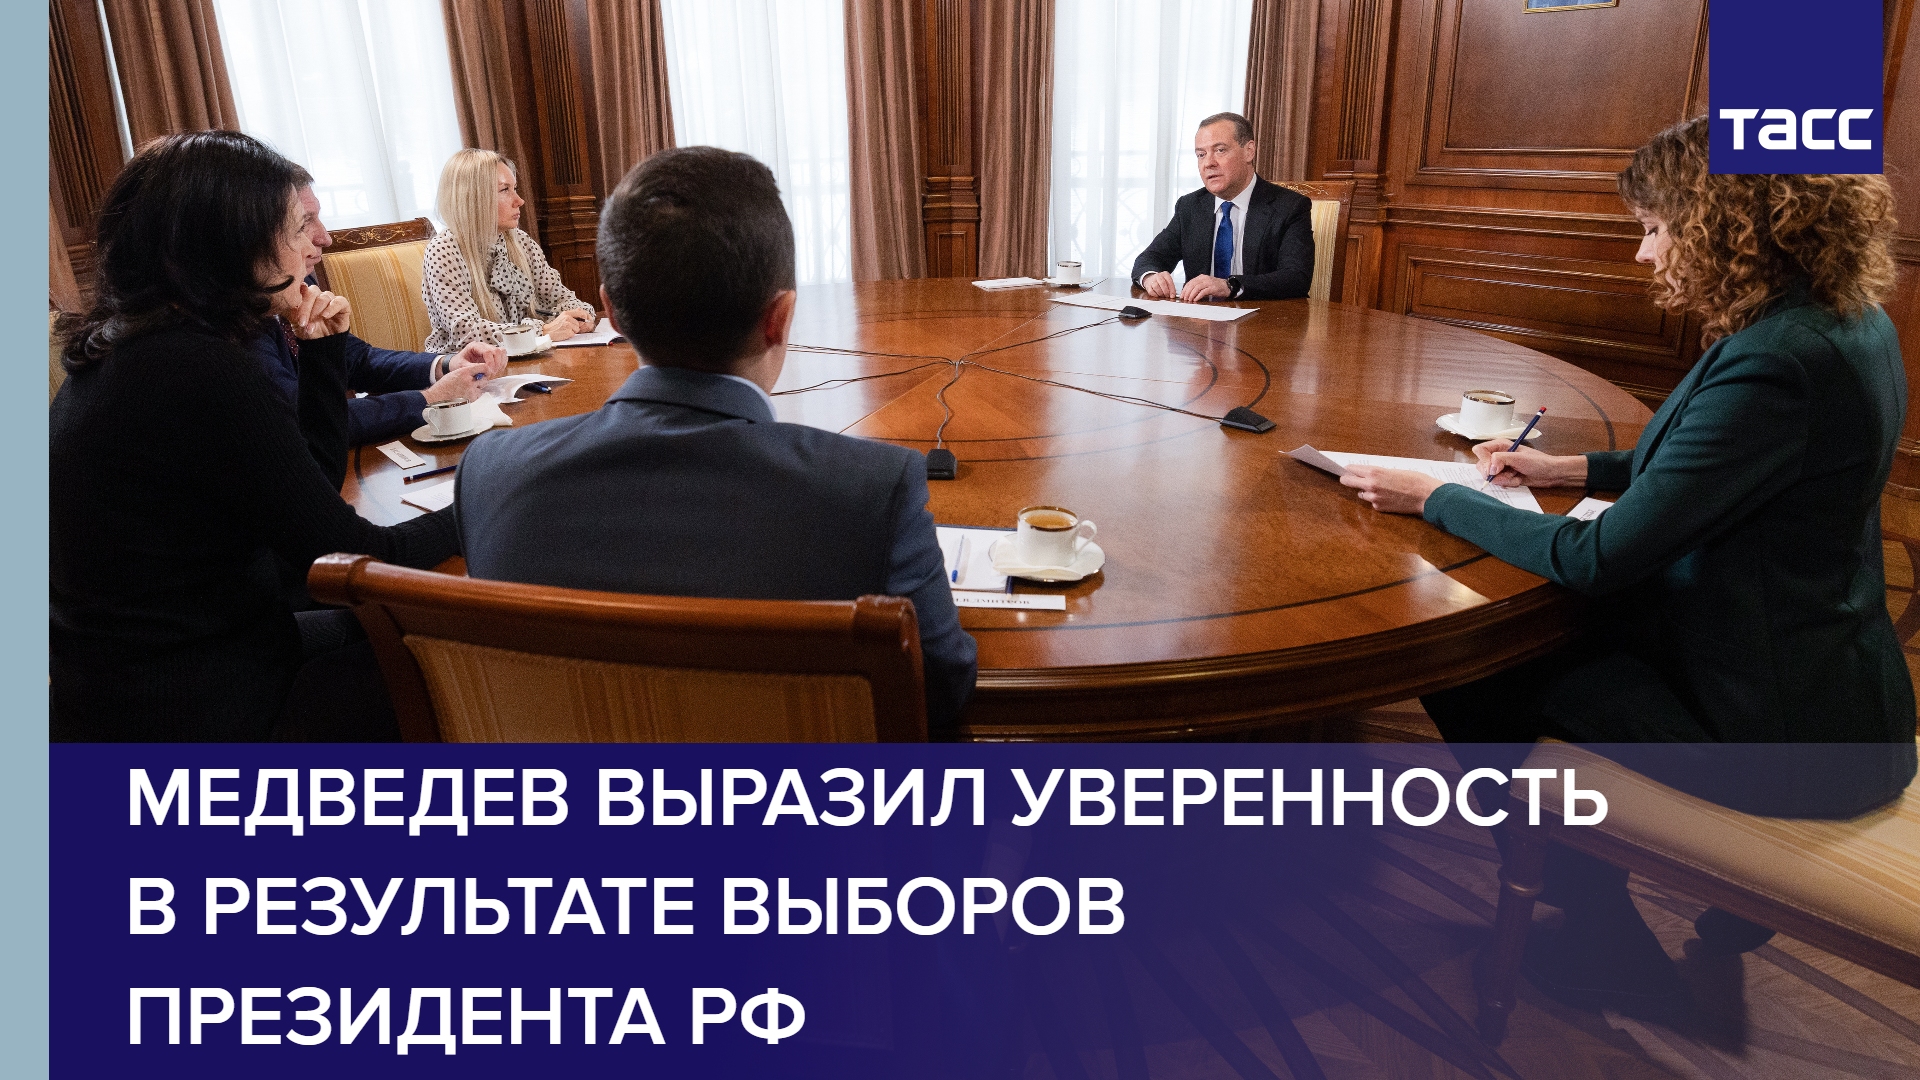 Медведев выразил уверенность в результате выборов президента РФ